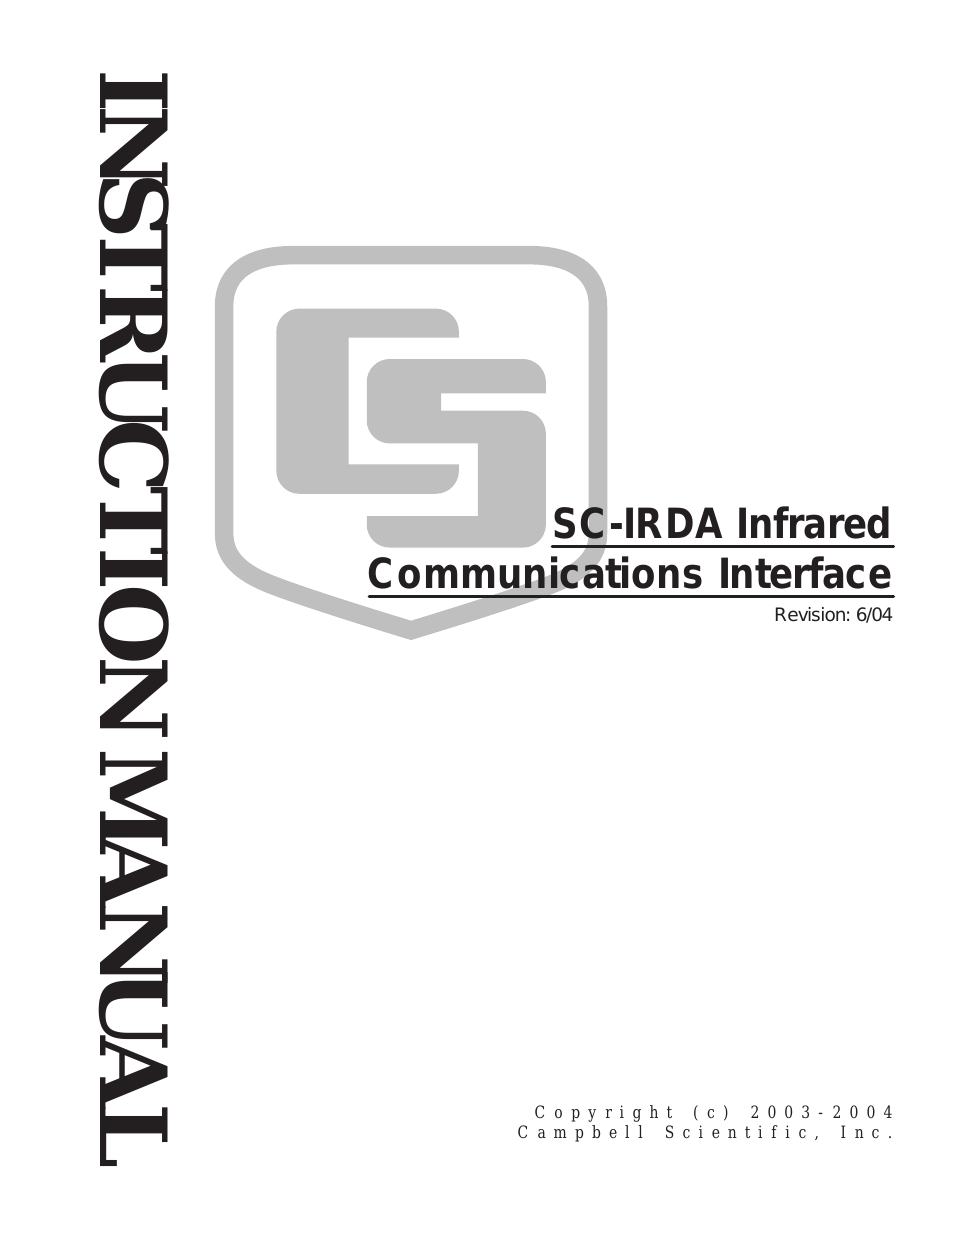 SC-IRDA CSL CS I/O to Infrared Interface